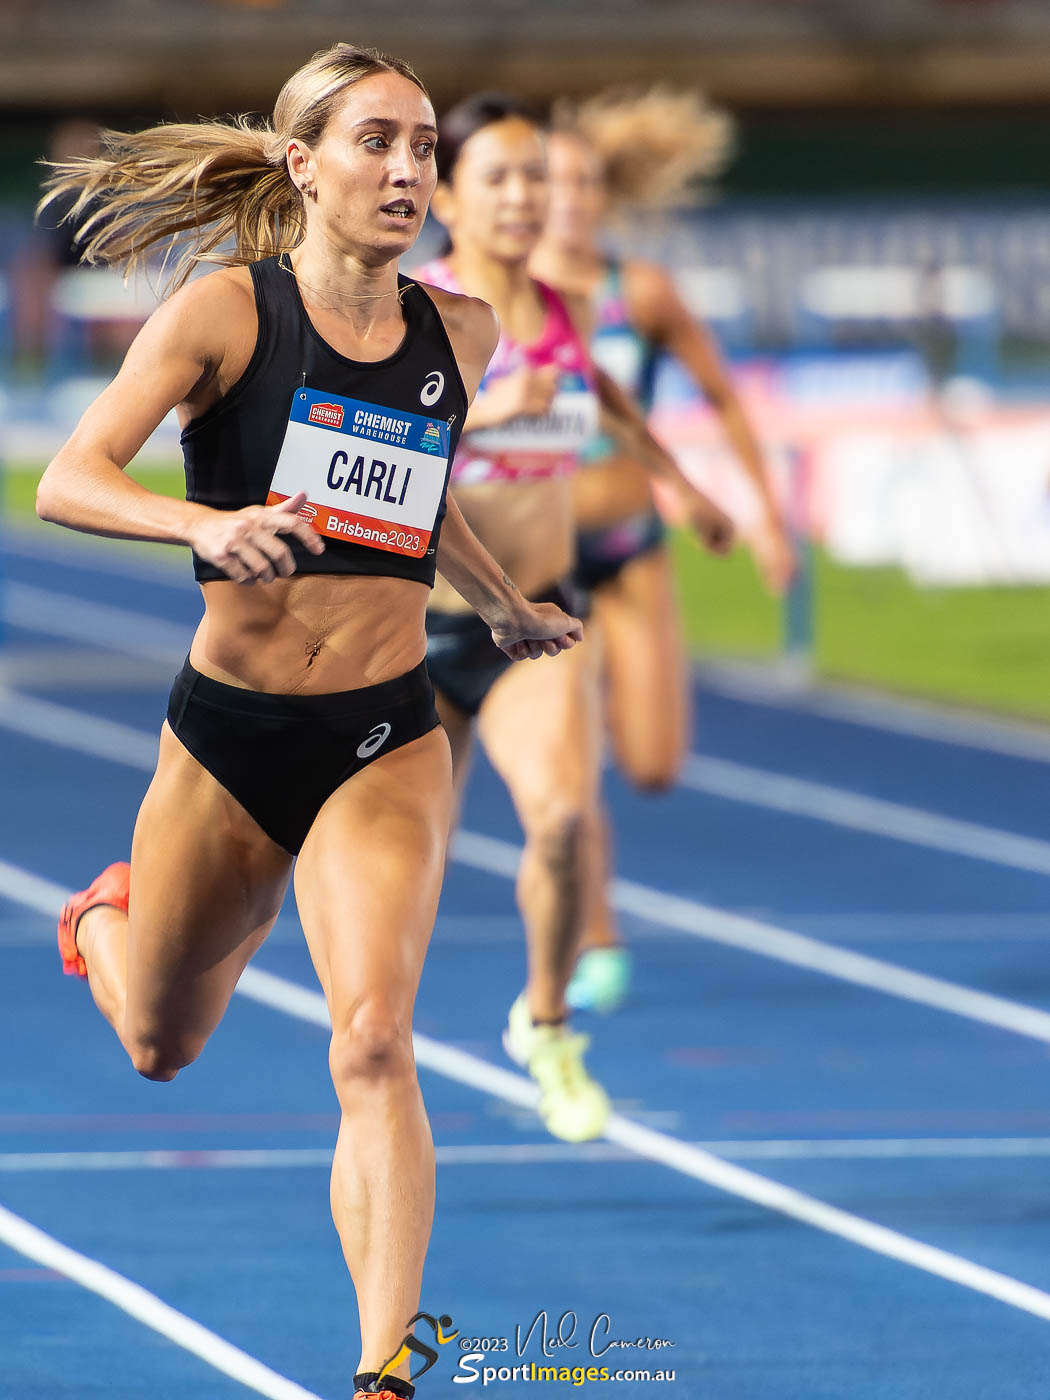 Sarah Carli, Women's 400m Hurdles